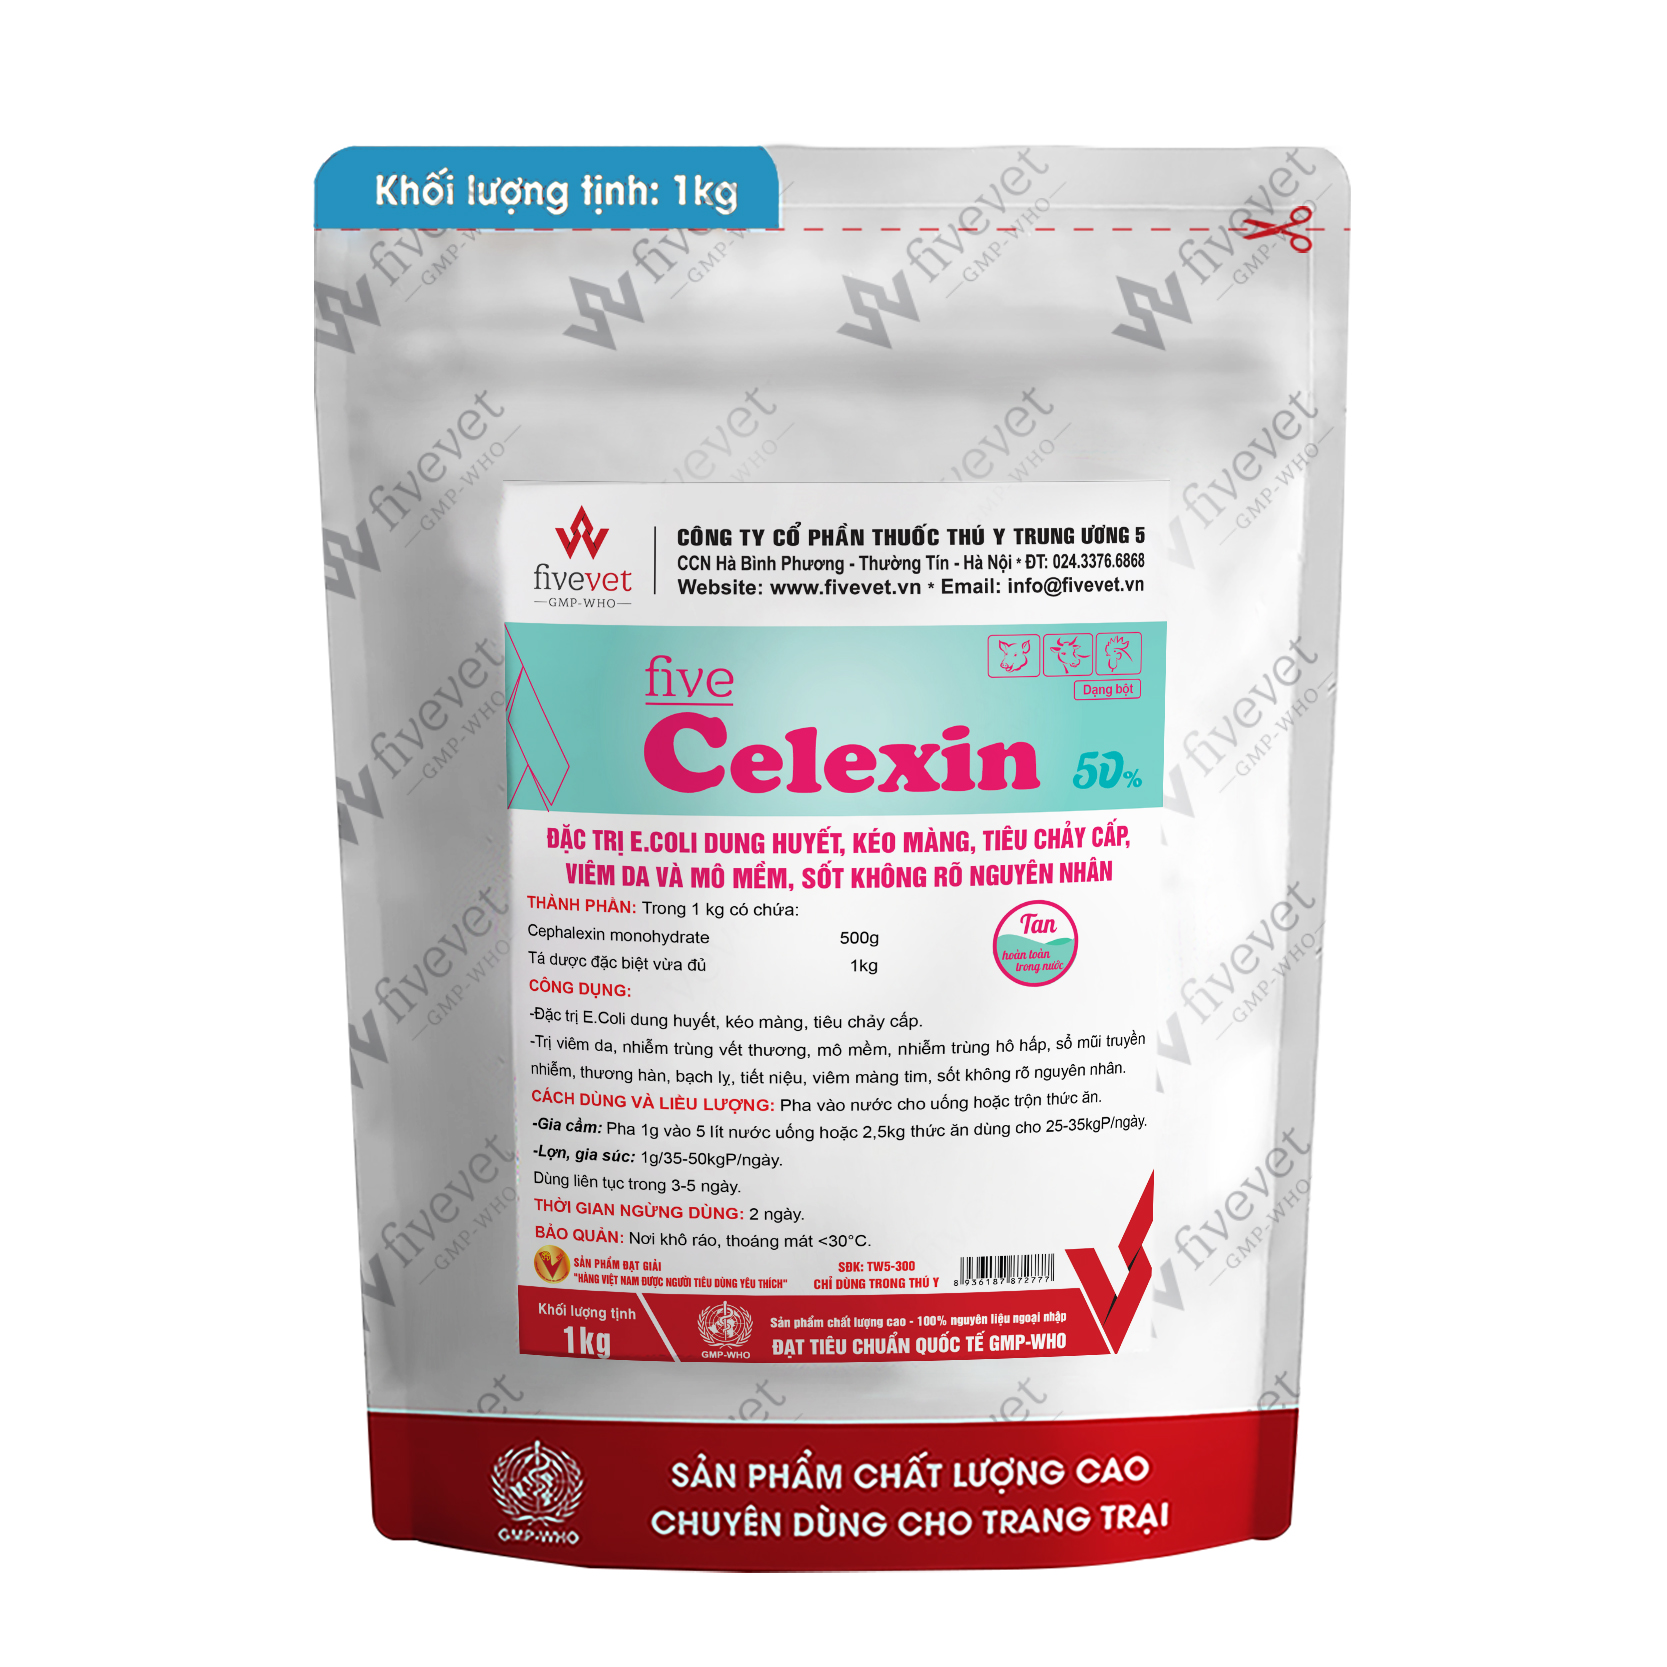 Five-Celexin (50%)